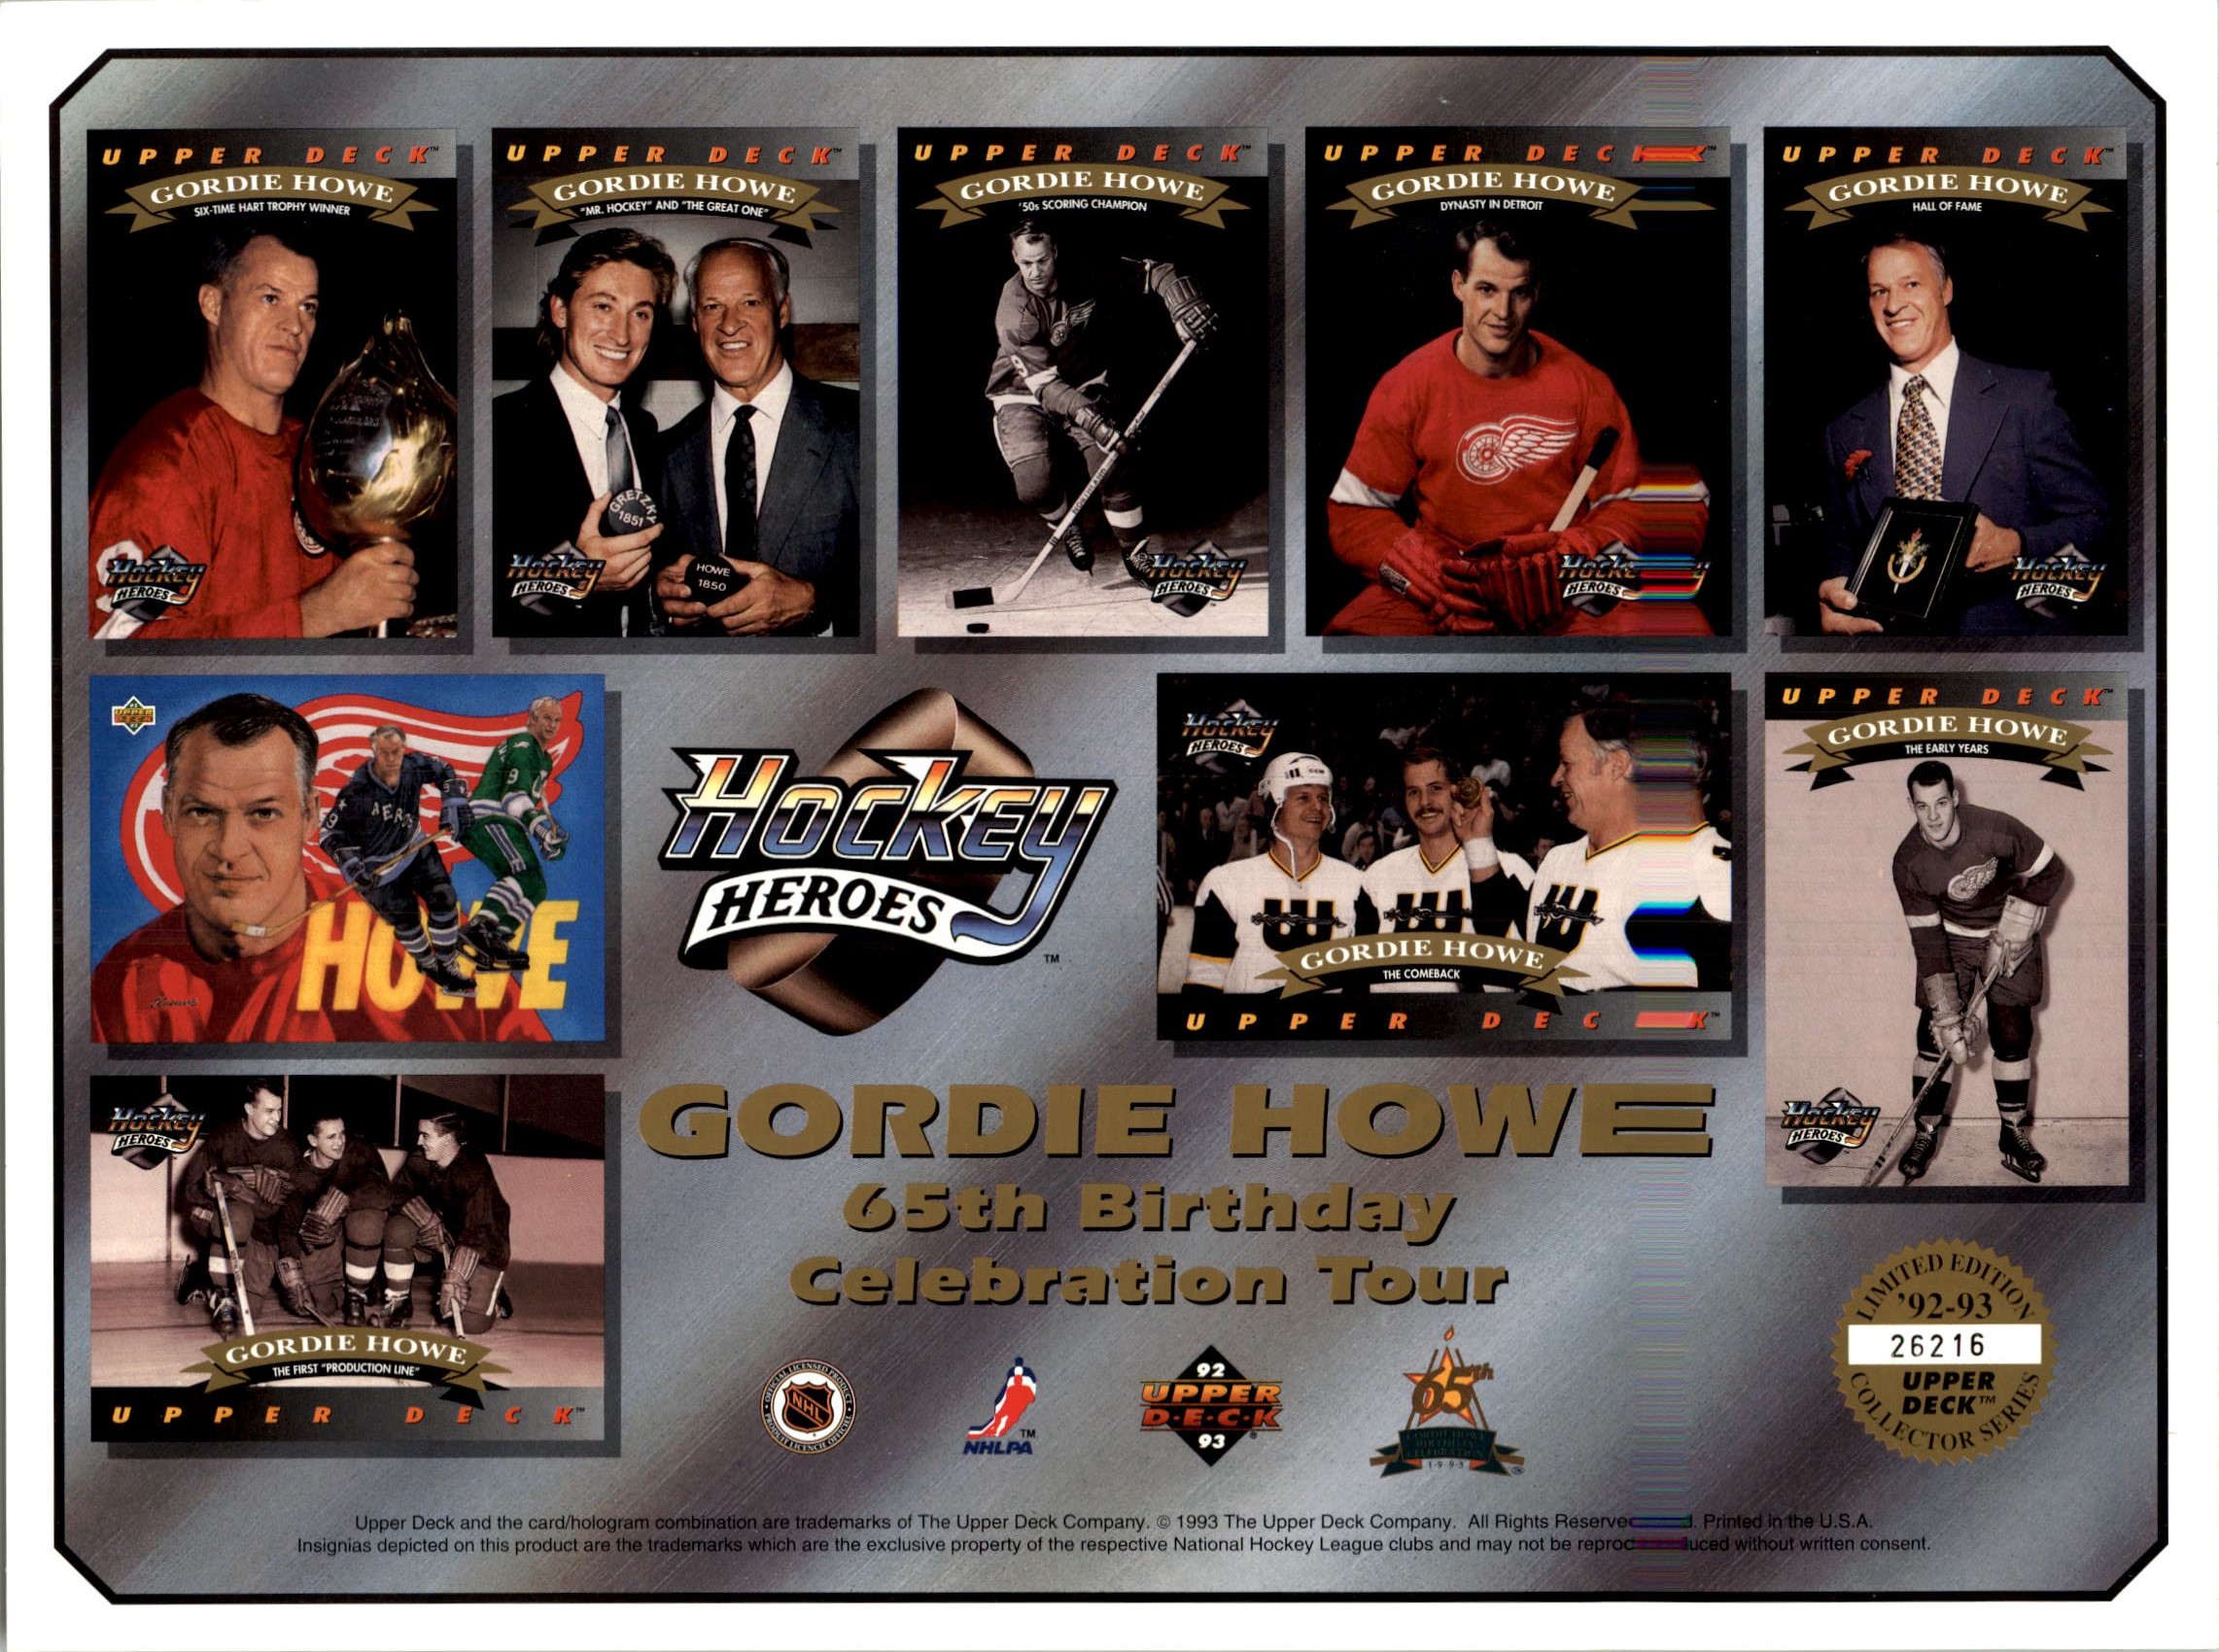 1992-93 Upper Deck Sheets #3 Gordie Howe 65th Birthday/Celebration Tour/(Nine Howe Hockey Heroes cards)